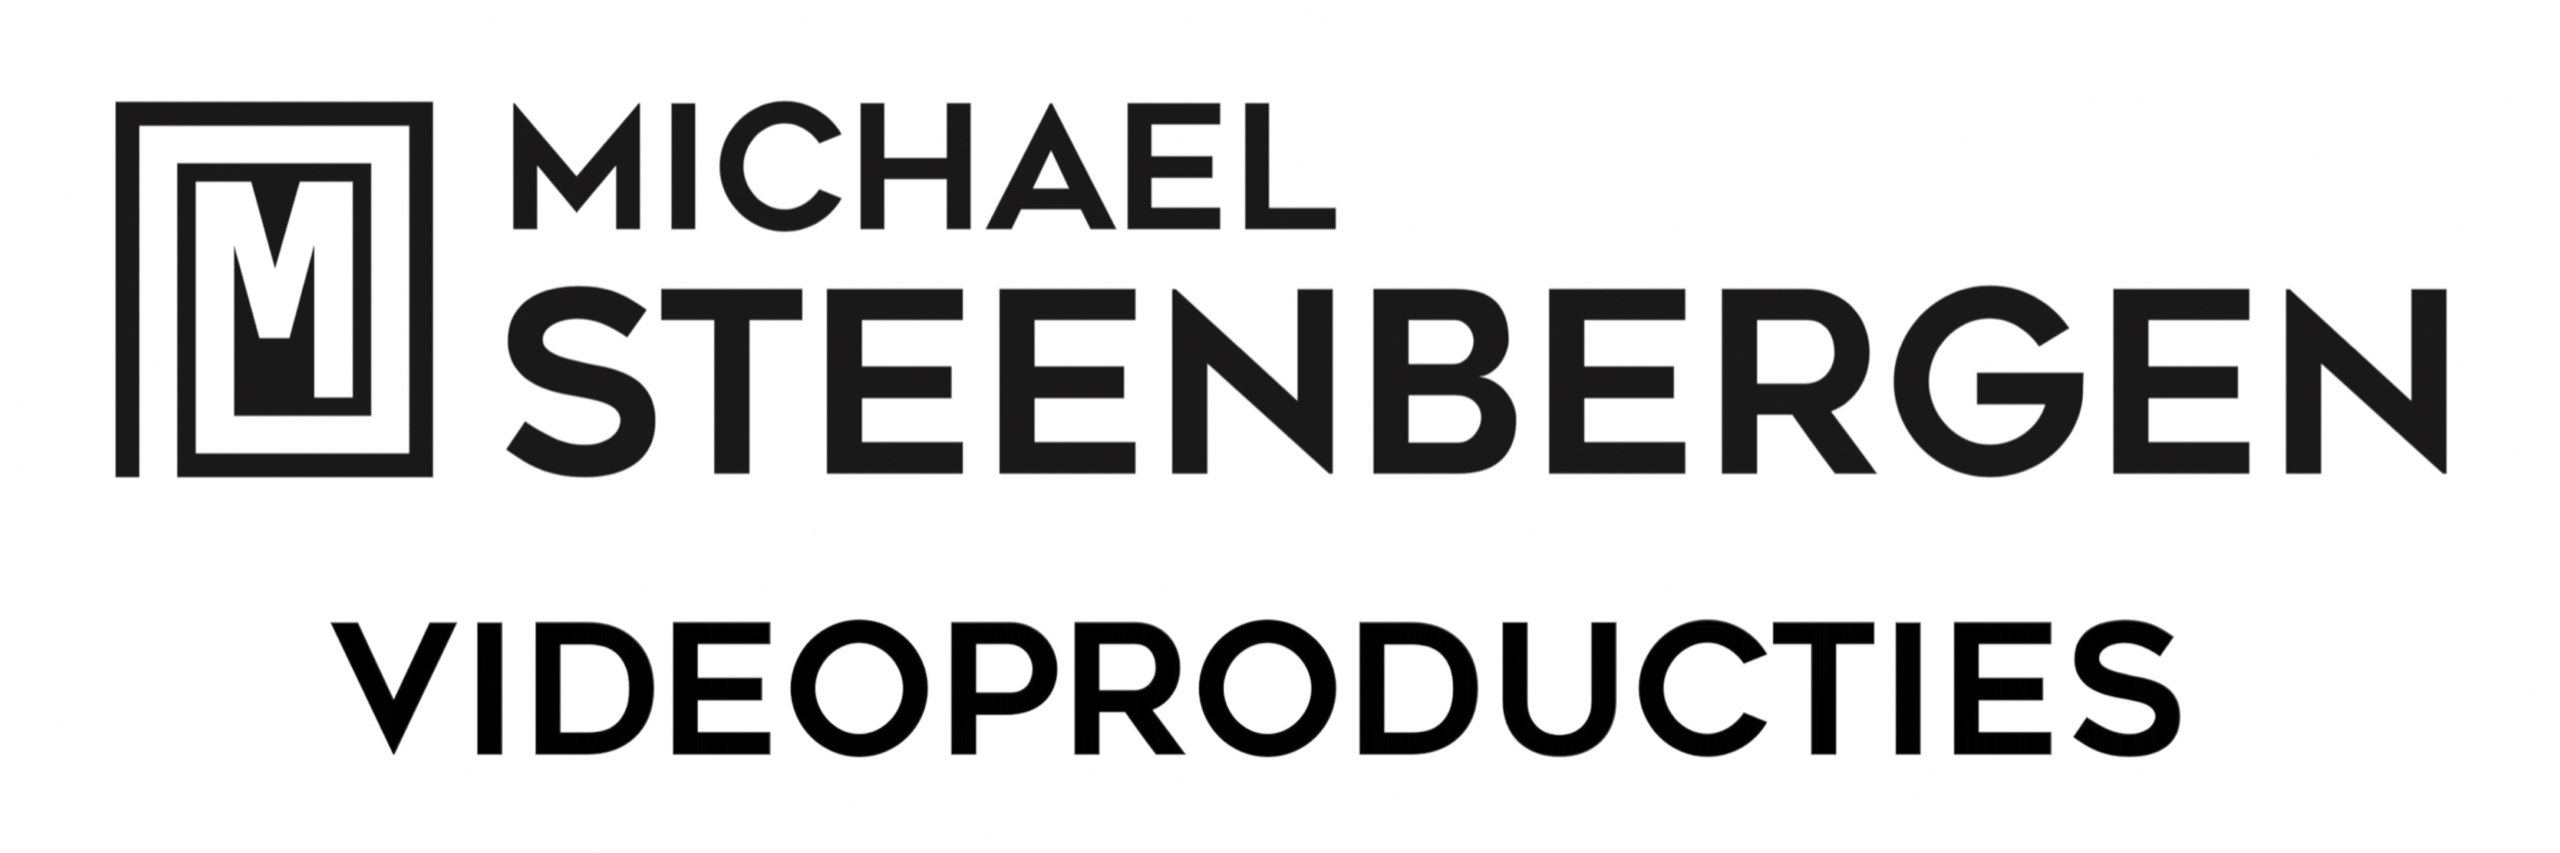 Michael Steenbergen videoproducties